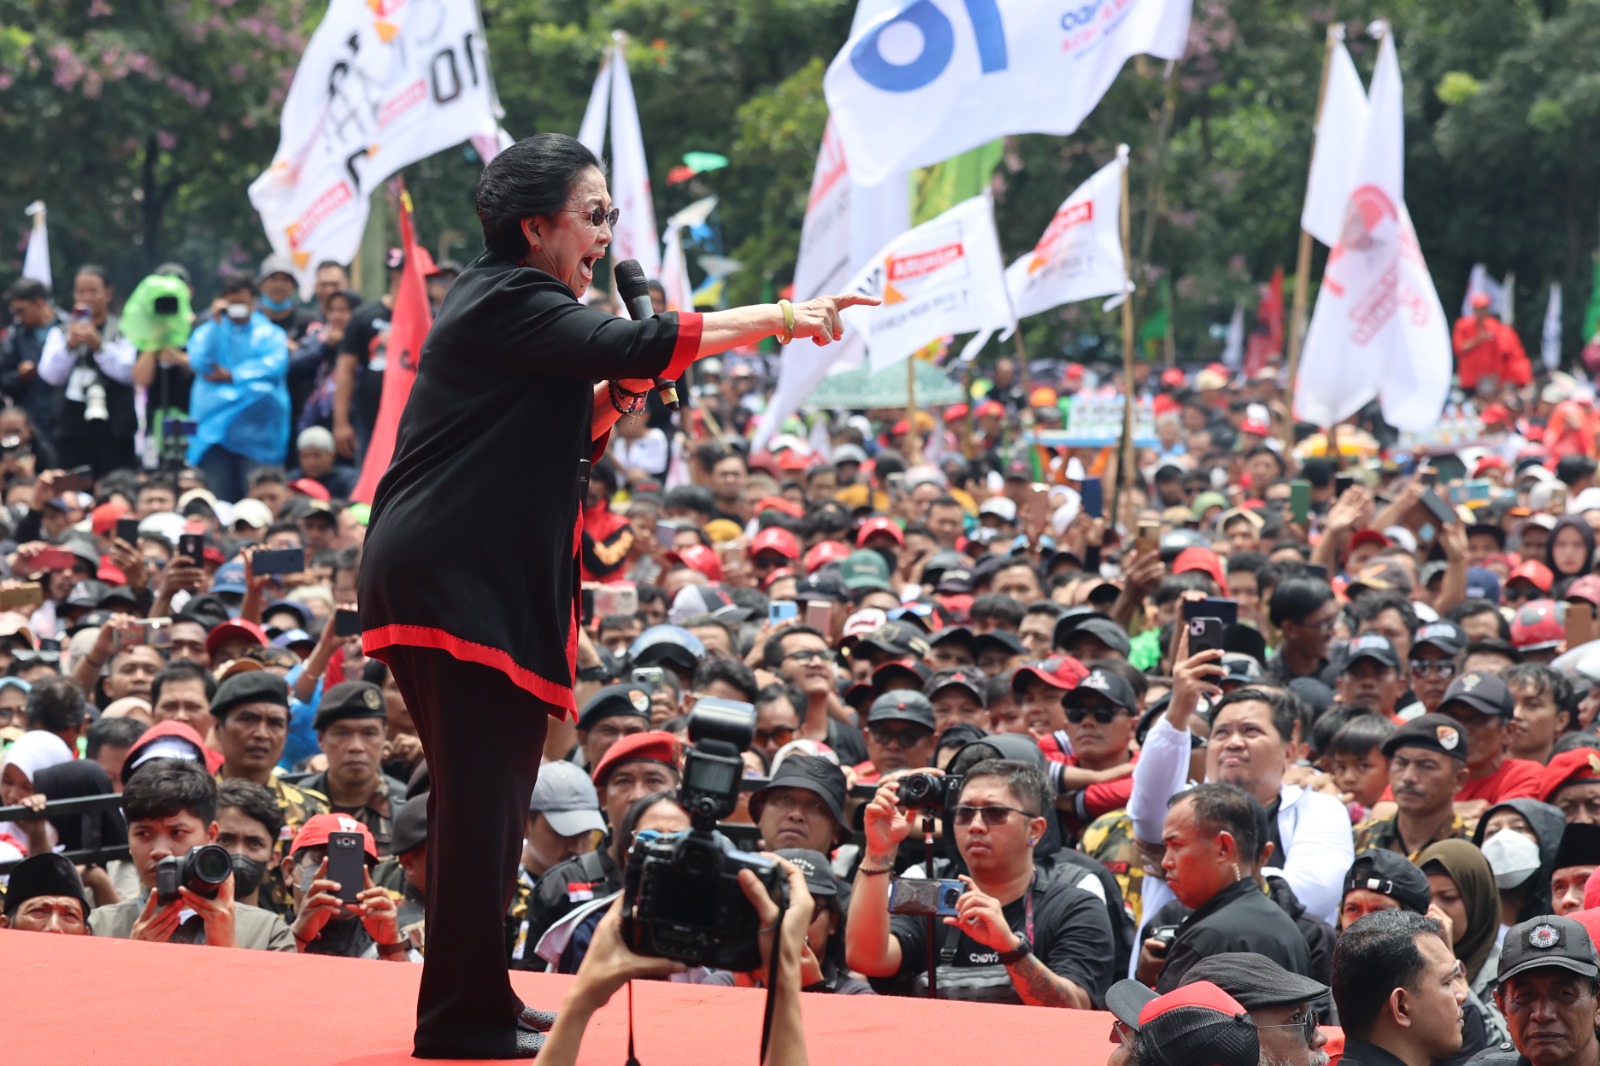 AMIN Menang di Tempat Megawati Nyoblos, Megawati Ngomel: Saya Dapat Laporan Kecurangan!